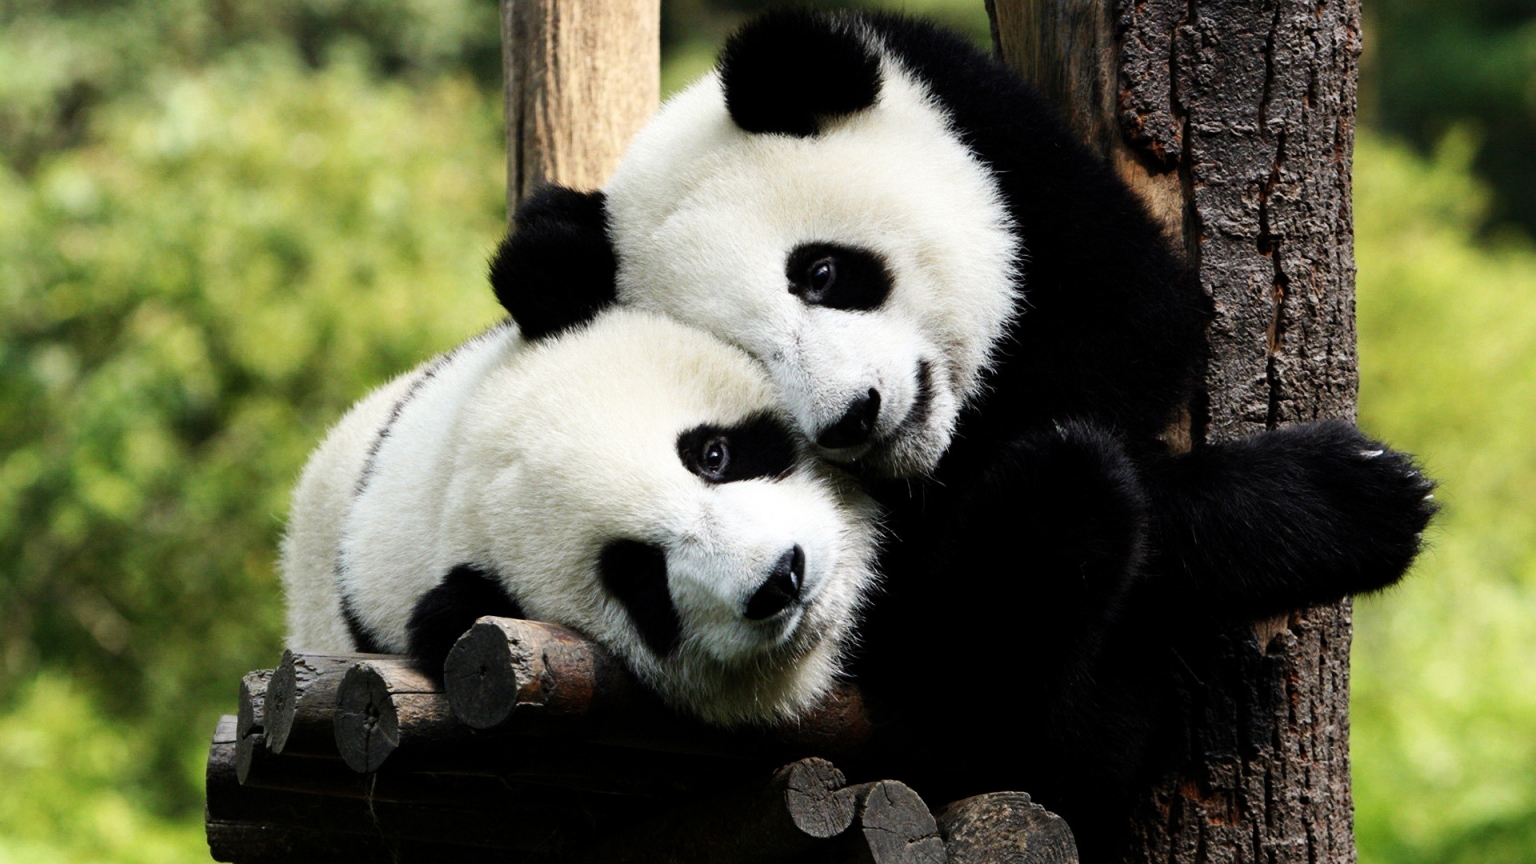 Panda Bears in Love for 1536 x 864 HDTV resolution